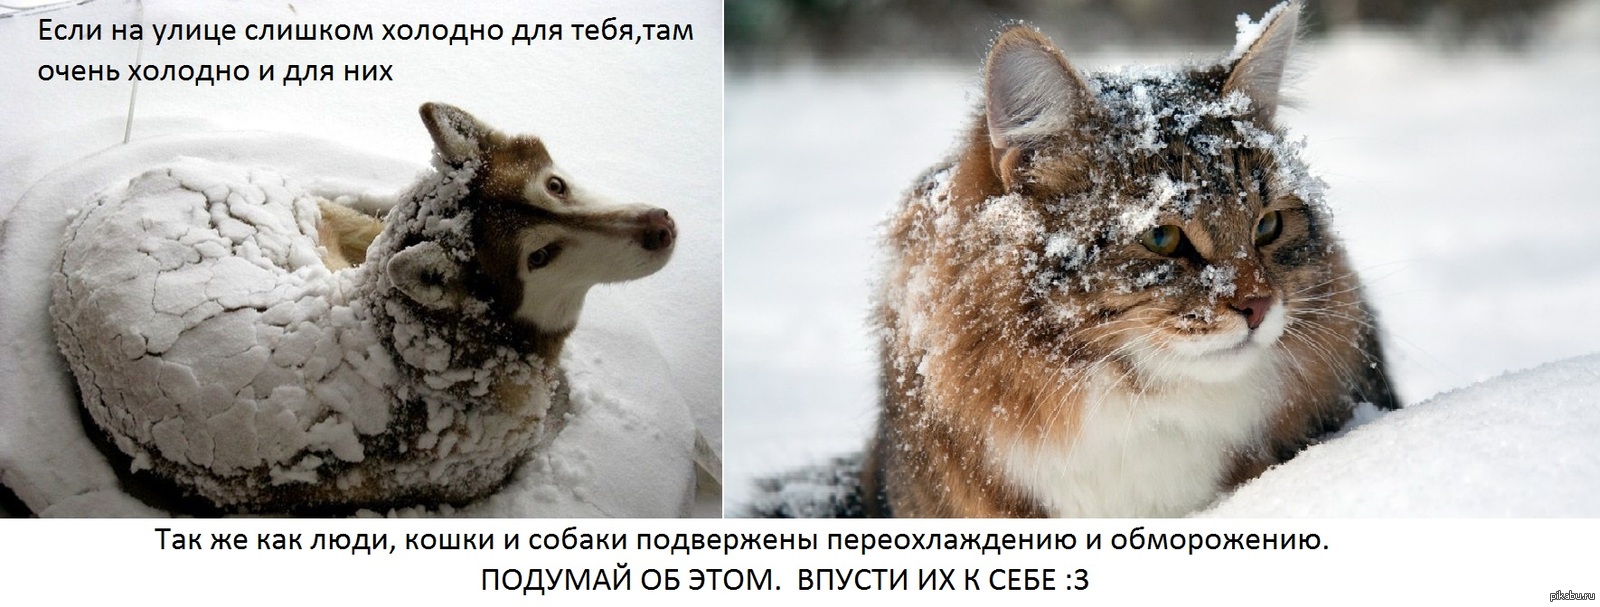 Тепло ли там. Бездомные животные зима. Замерзающие бездомные животные. Помогайте бездомным животным в Морозы. Бездомные животные мерзнут.